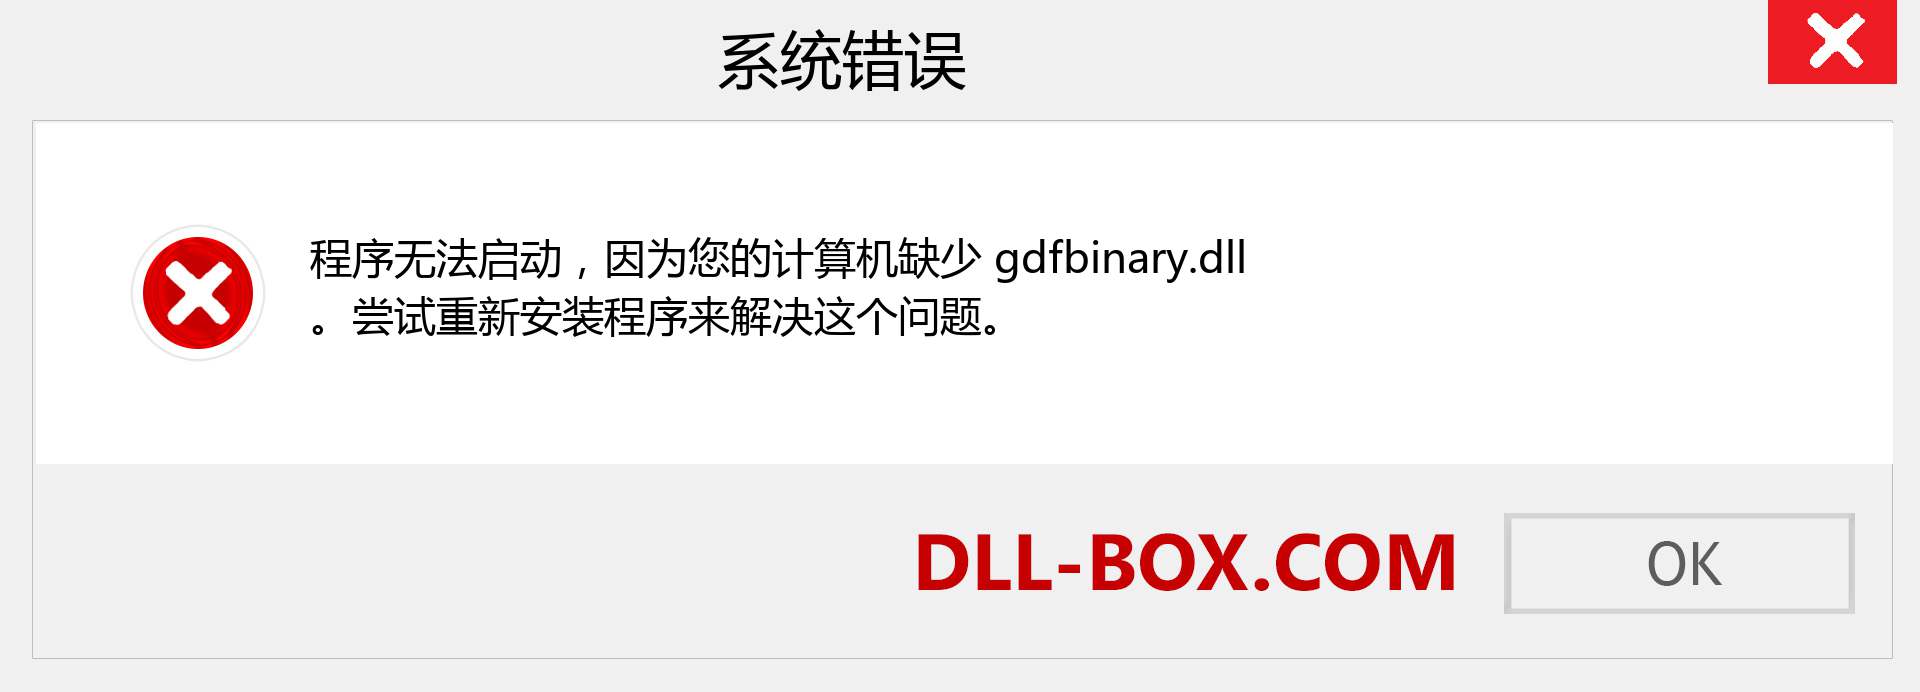 gdfbinary.dll 文件丢失？。 适用于 Windows 7、8、10 的下载 - 修复 Windows、照片、图像上的 gdfbinary dll 丢失错误